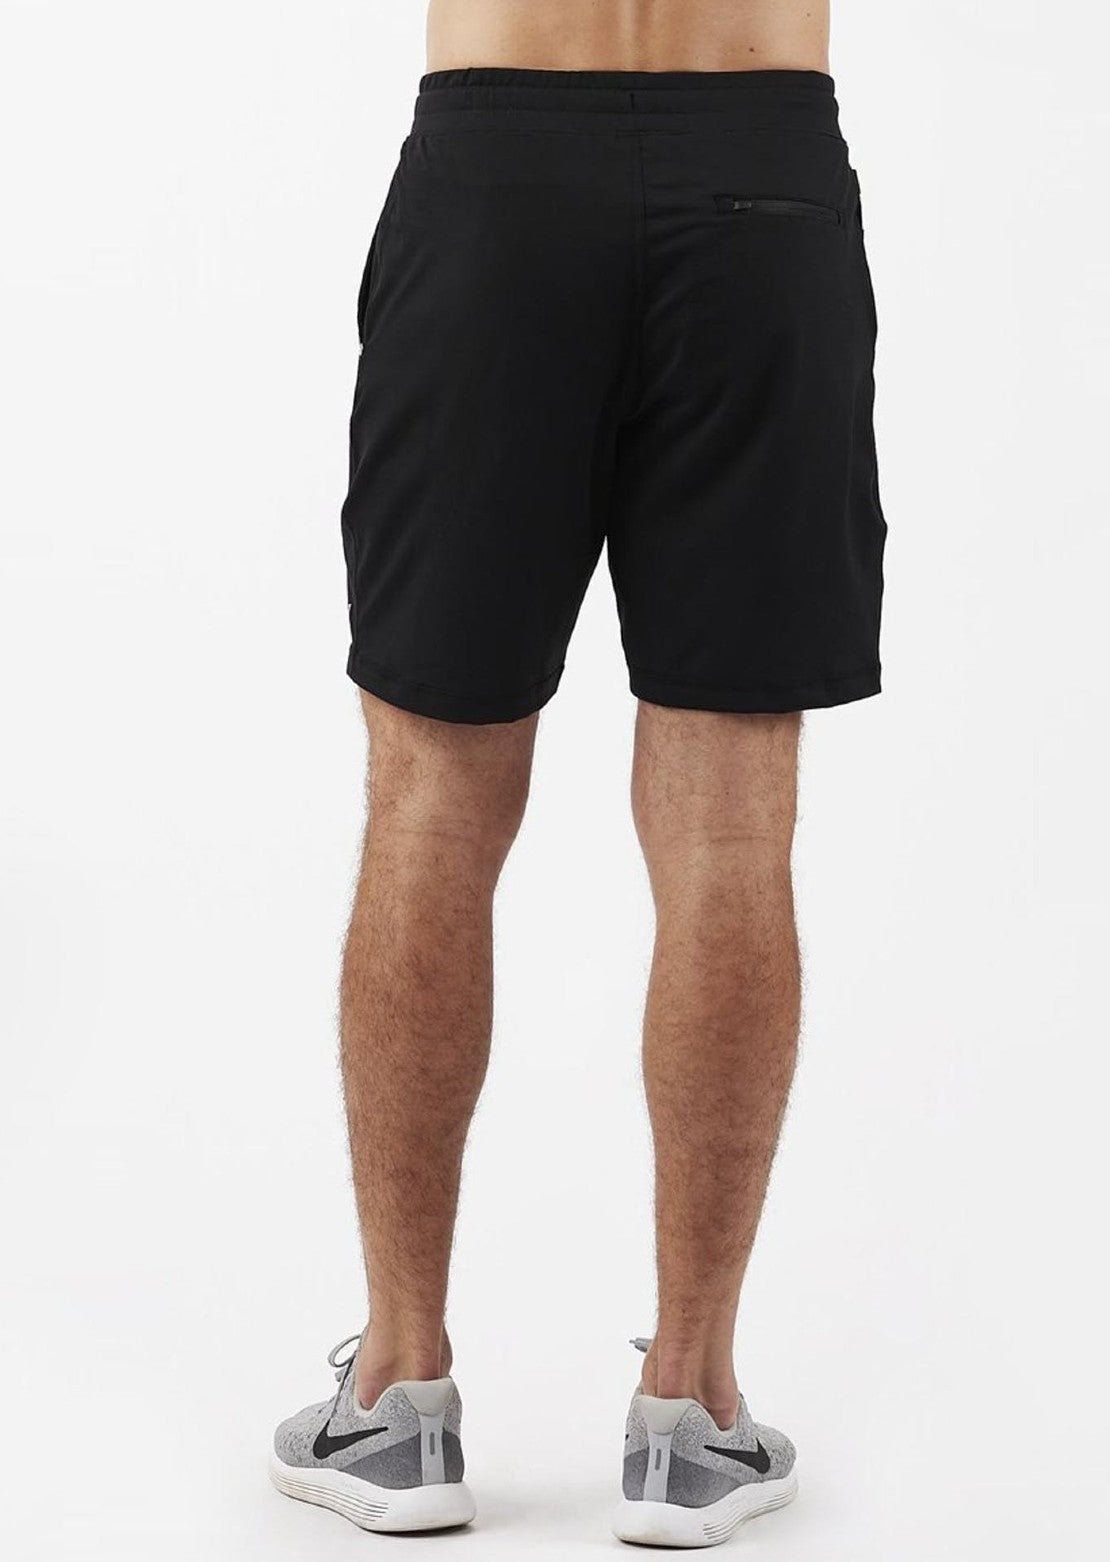 Vuori Men's Ponto Shorts - PRFO Sports